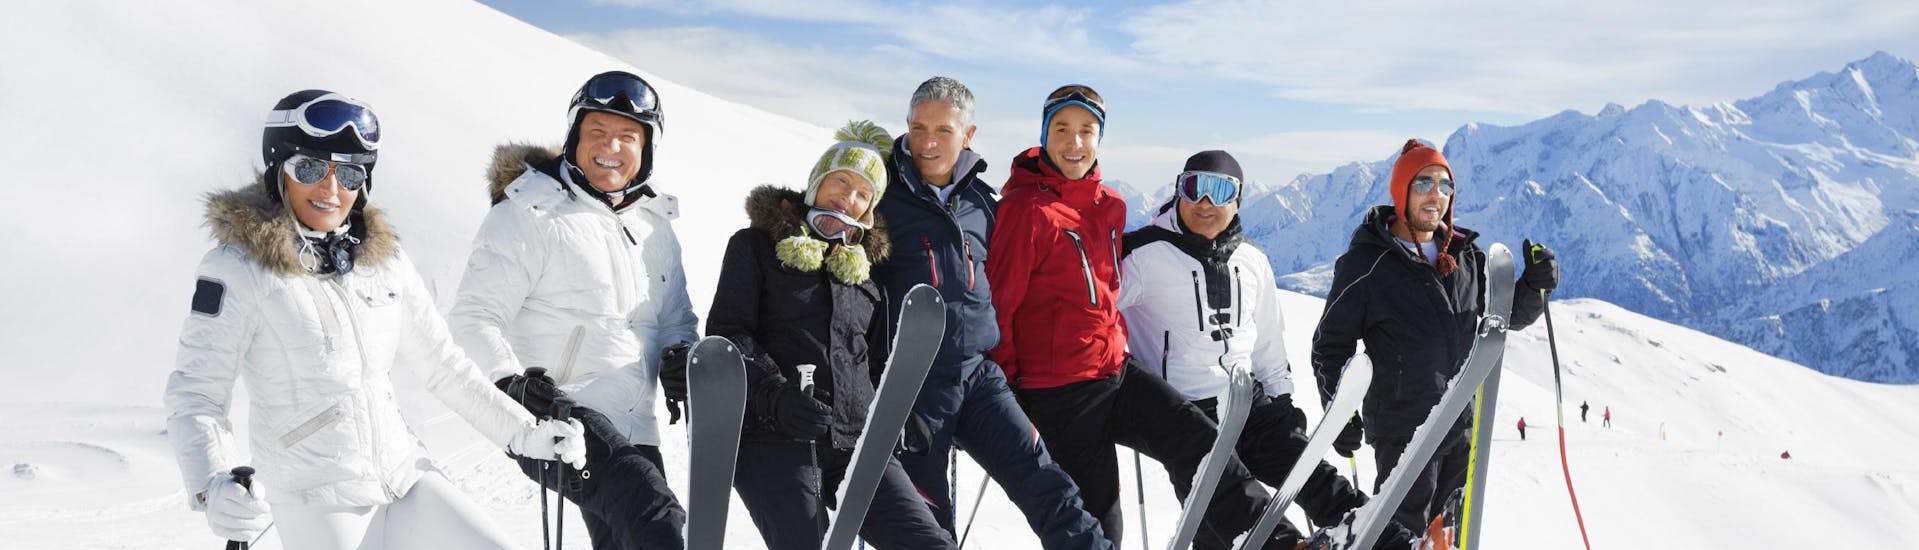 Un grupo de esquiadores da una clase de esquí en al estación de esquí de Winterberg (Sahnehang). 